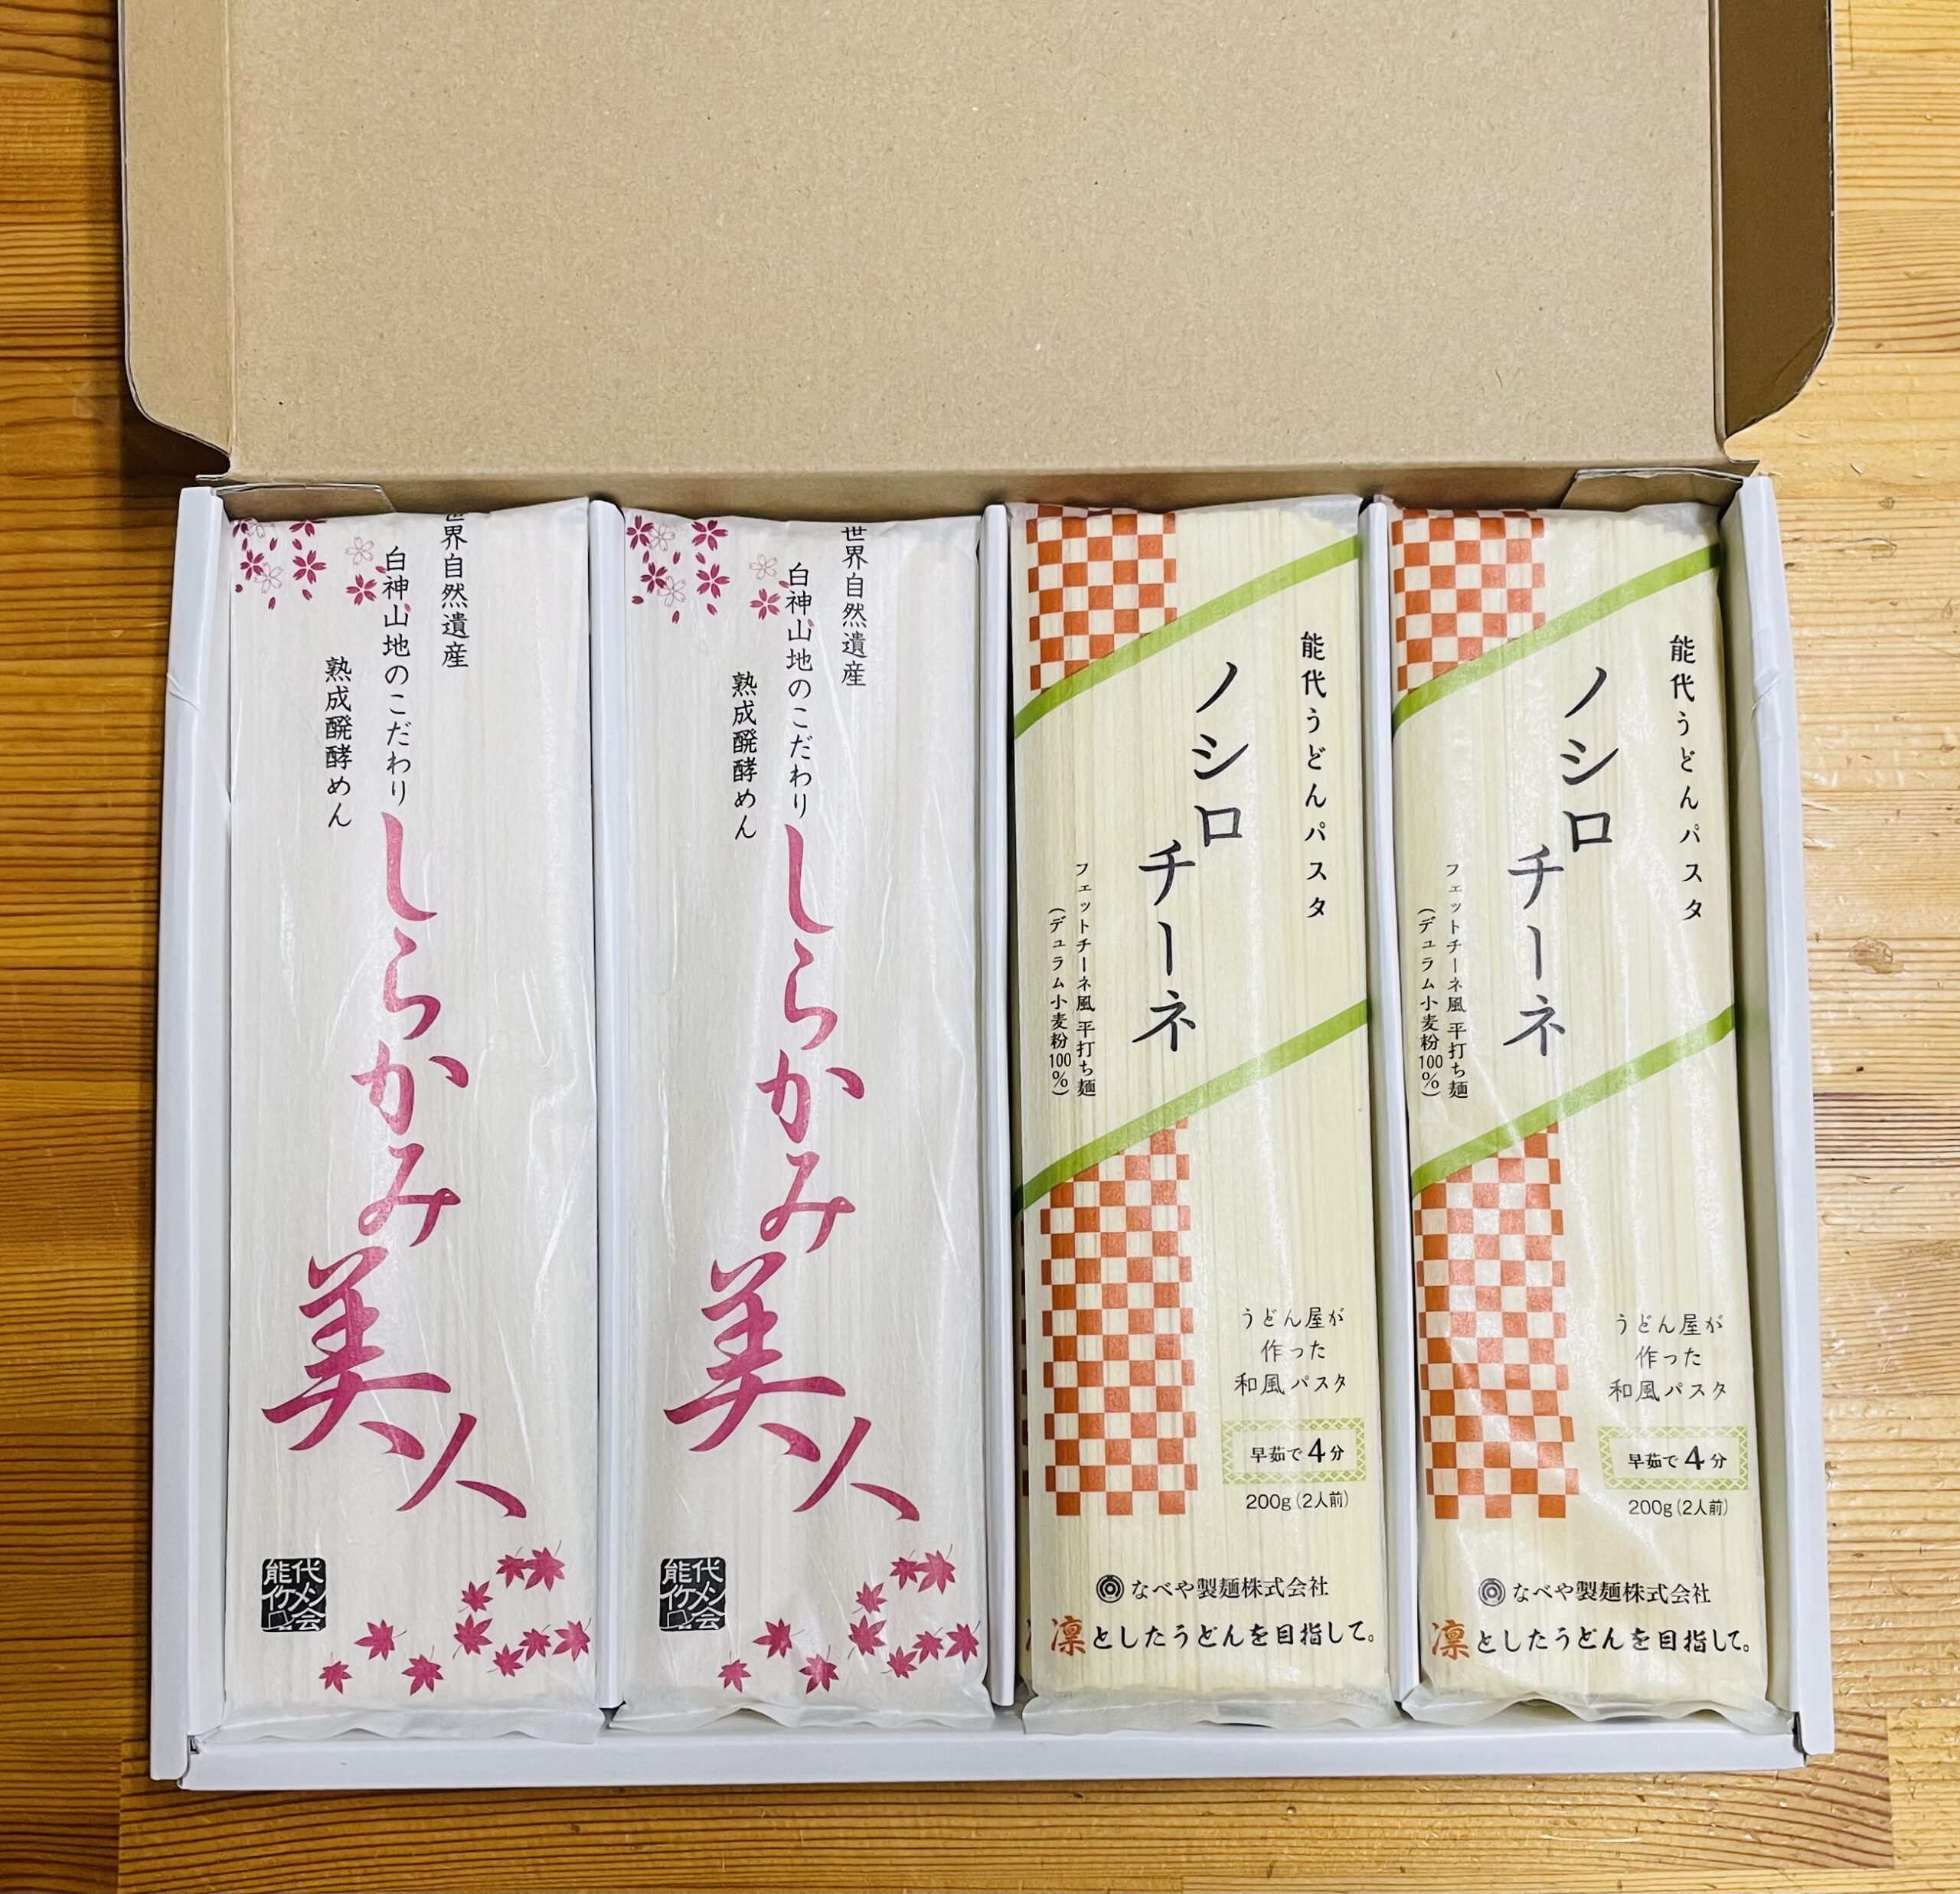 能代うどんパスタ ノシロチーネ(10束入り) | なべや製麺